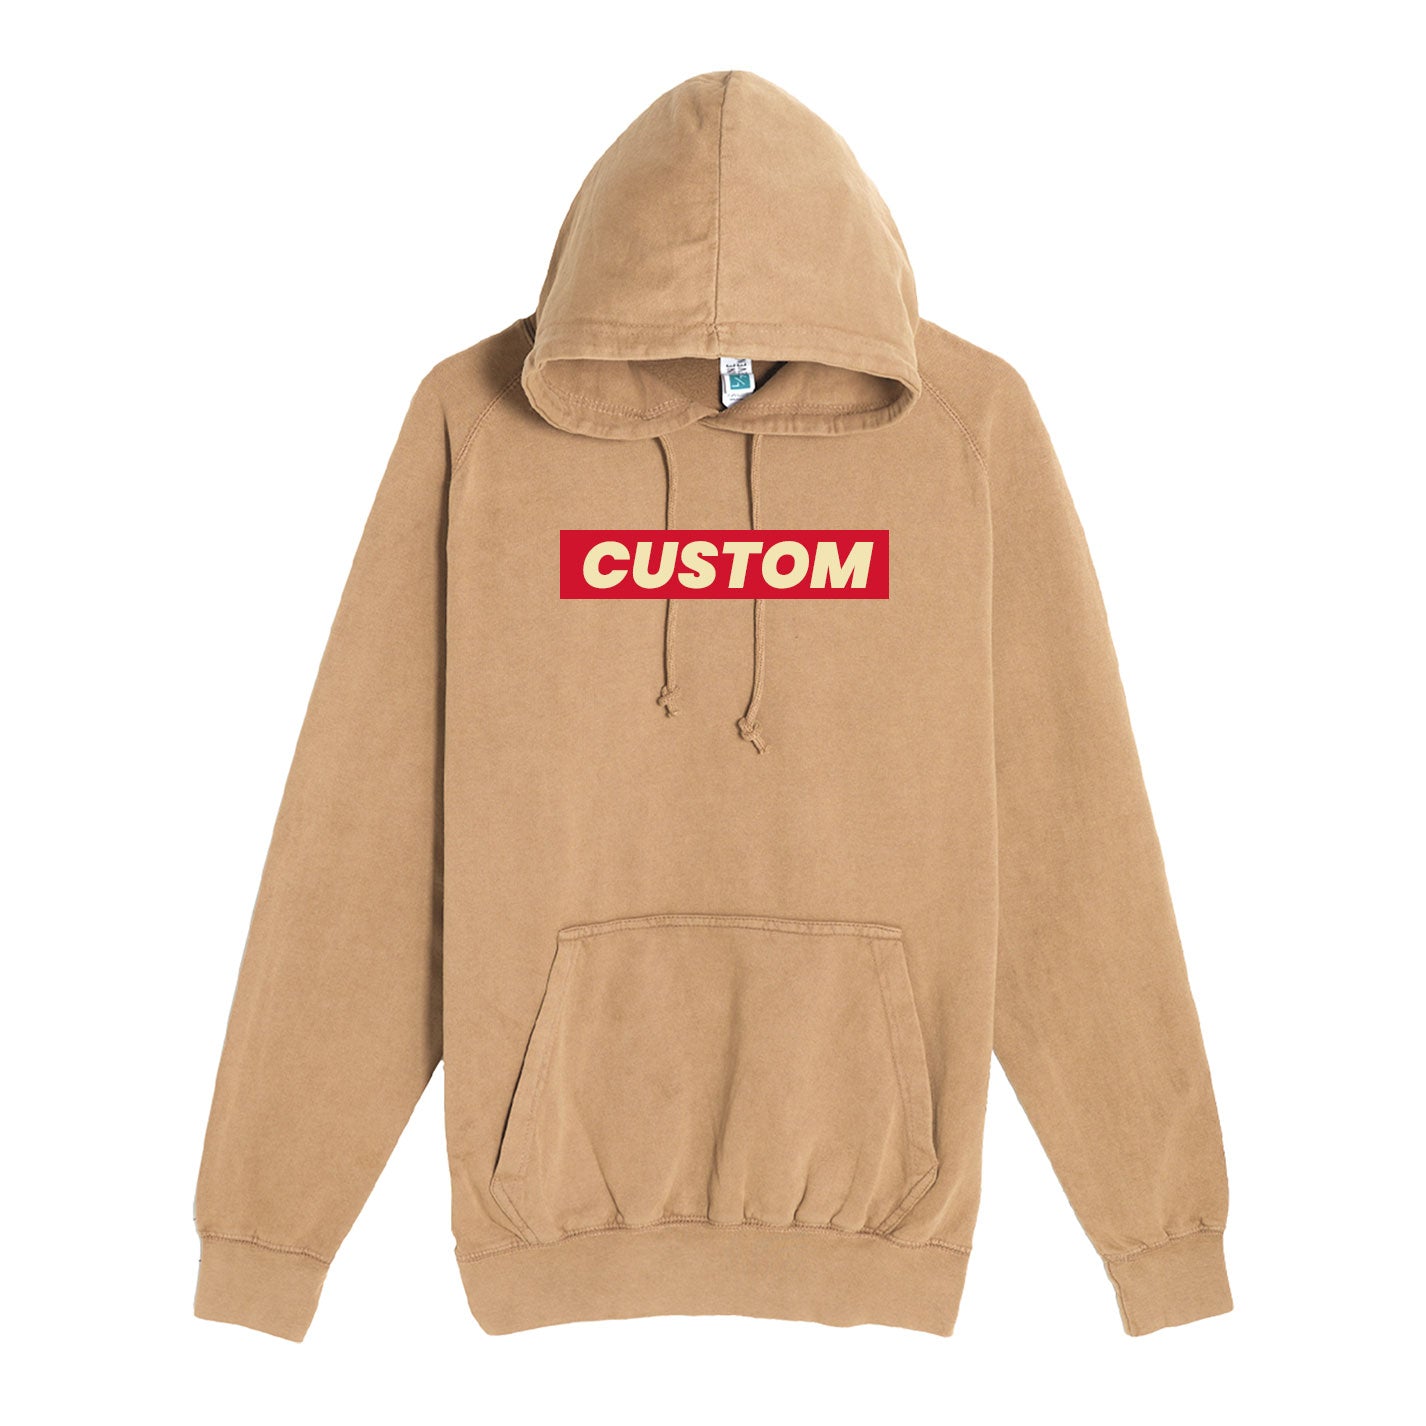 custom vintage hoodies in tan